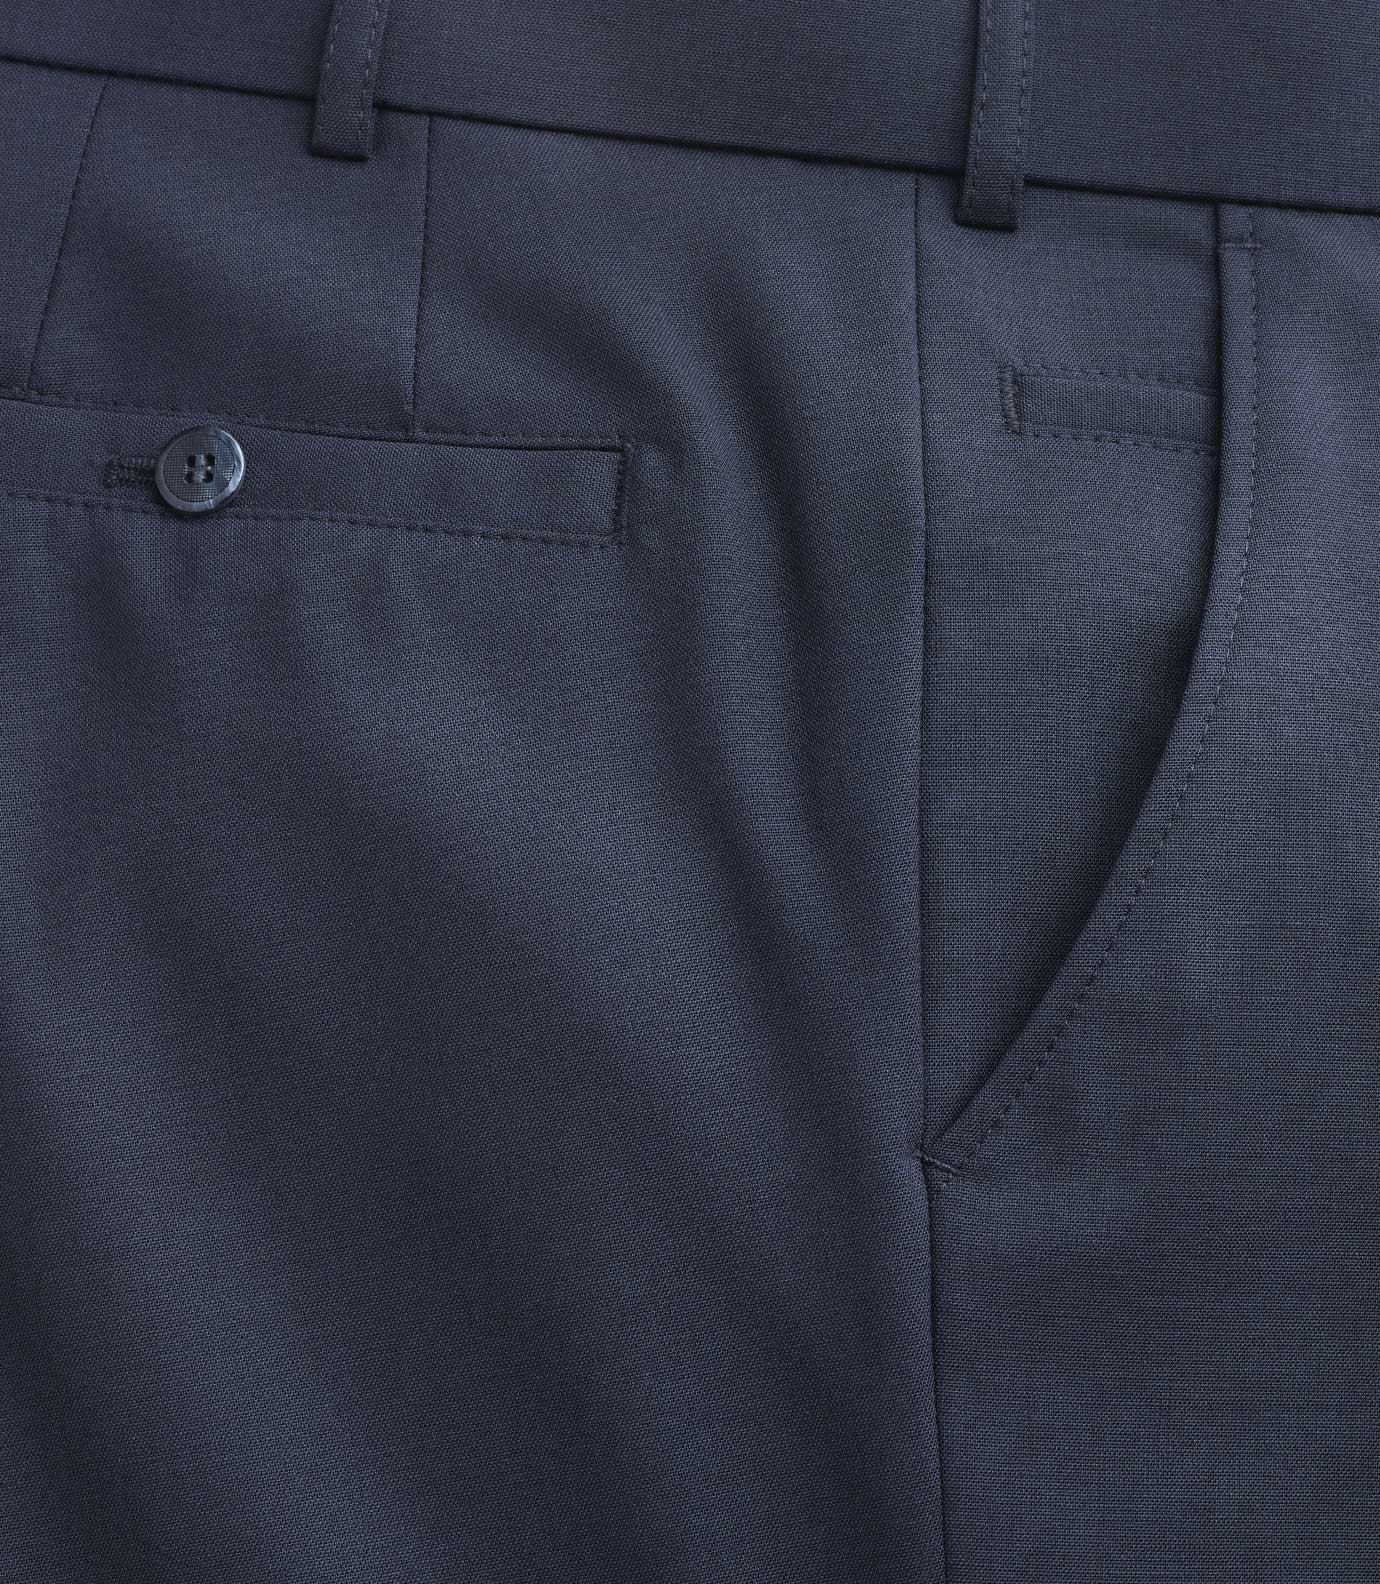 Meyer Meyer Formal Wool Mix Trouser - Navy | Menswear | Trousers ...